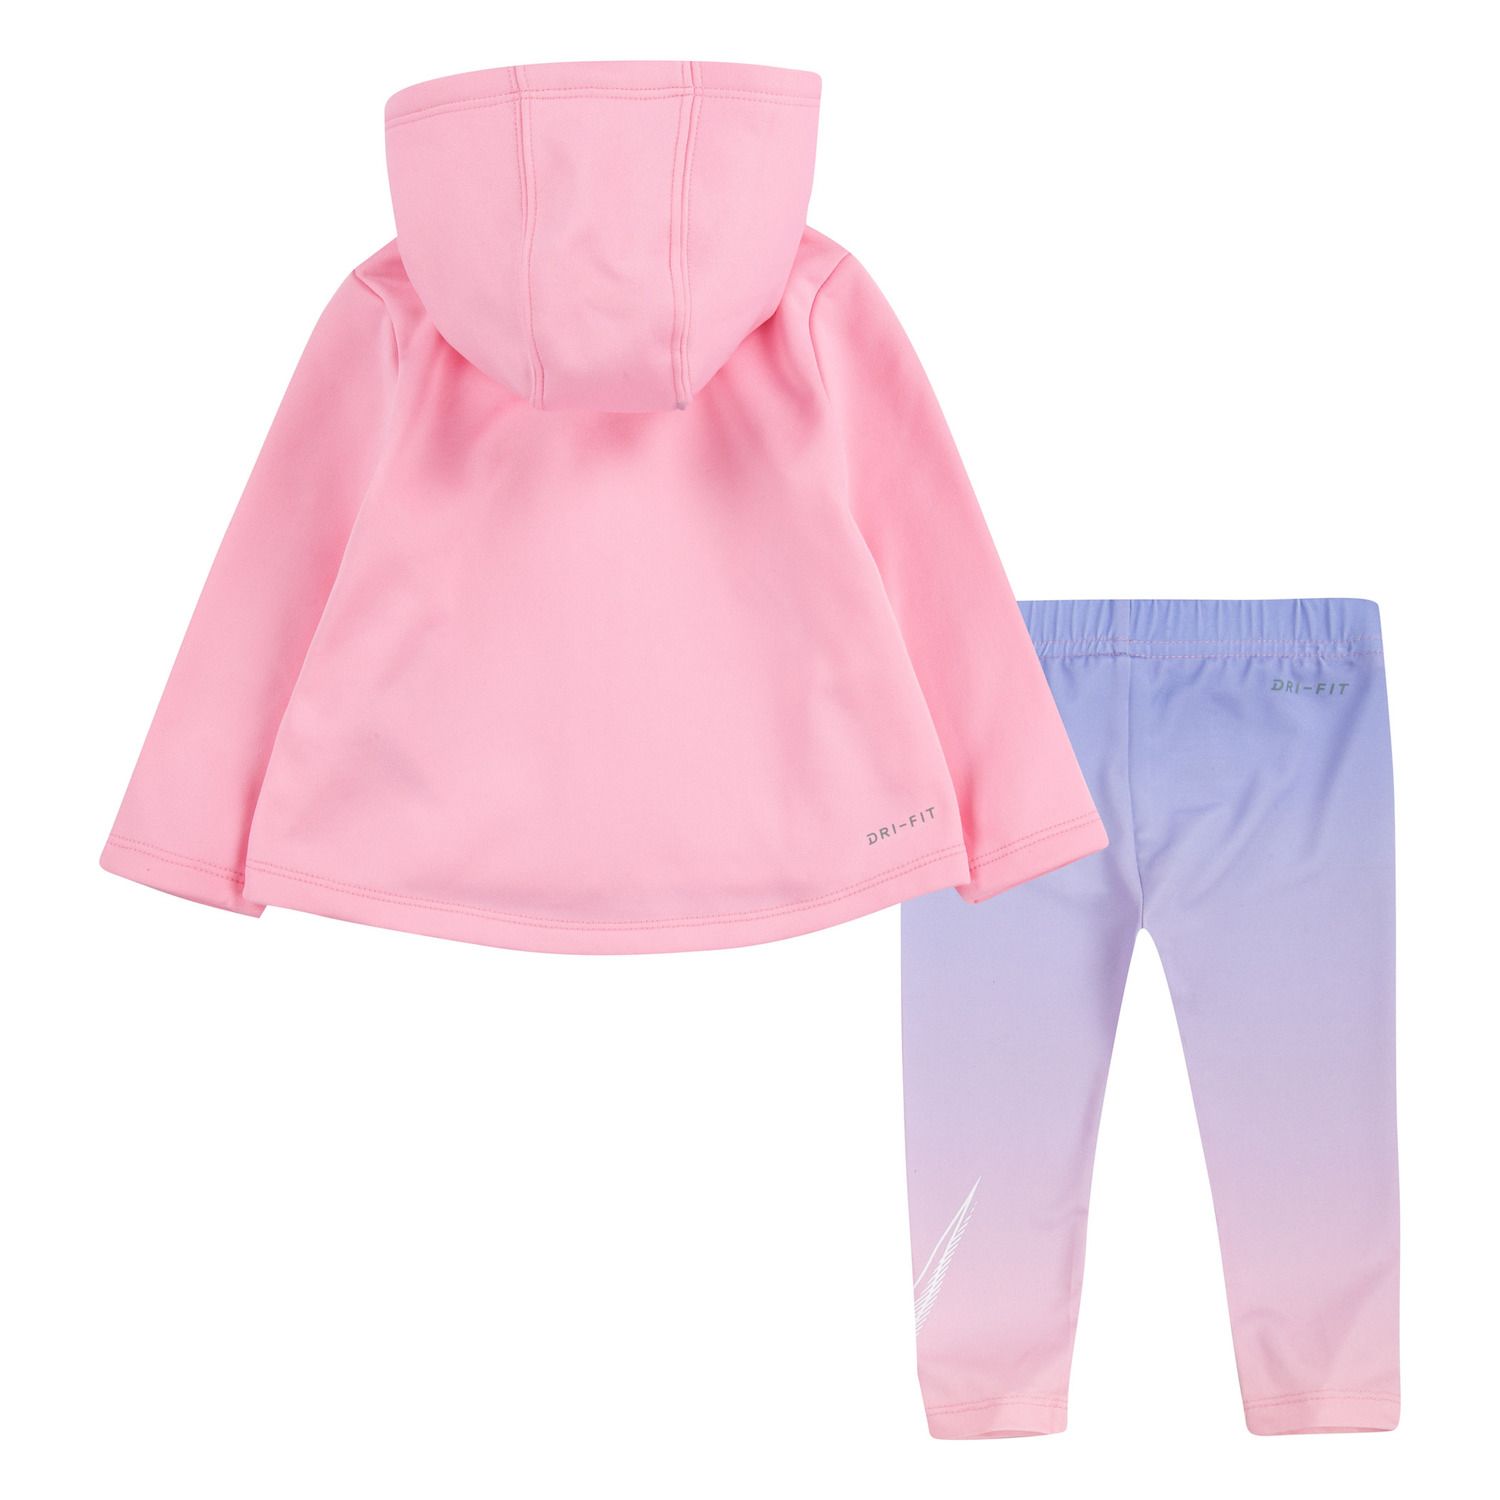 Nike Baby Girls' Clothing | Kohl's